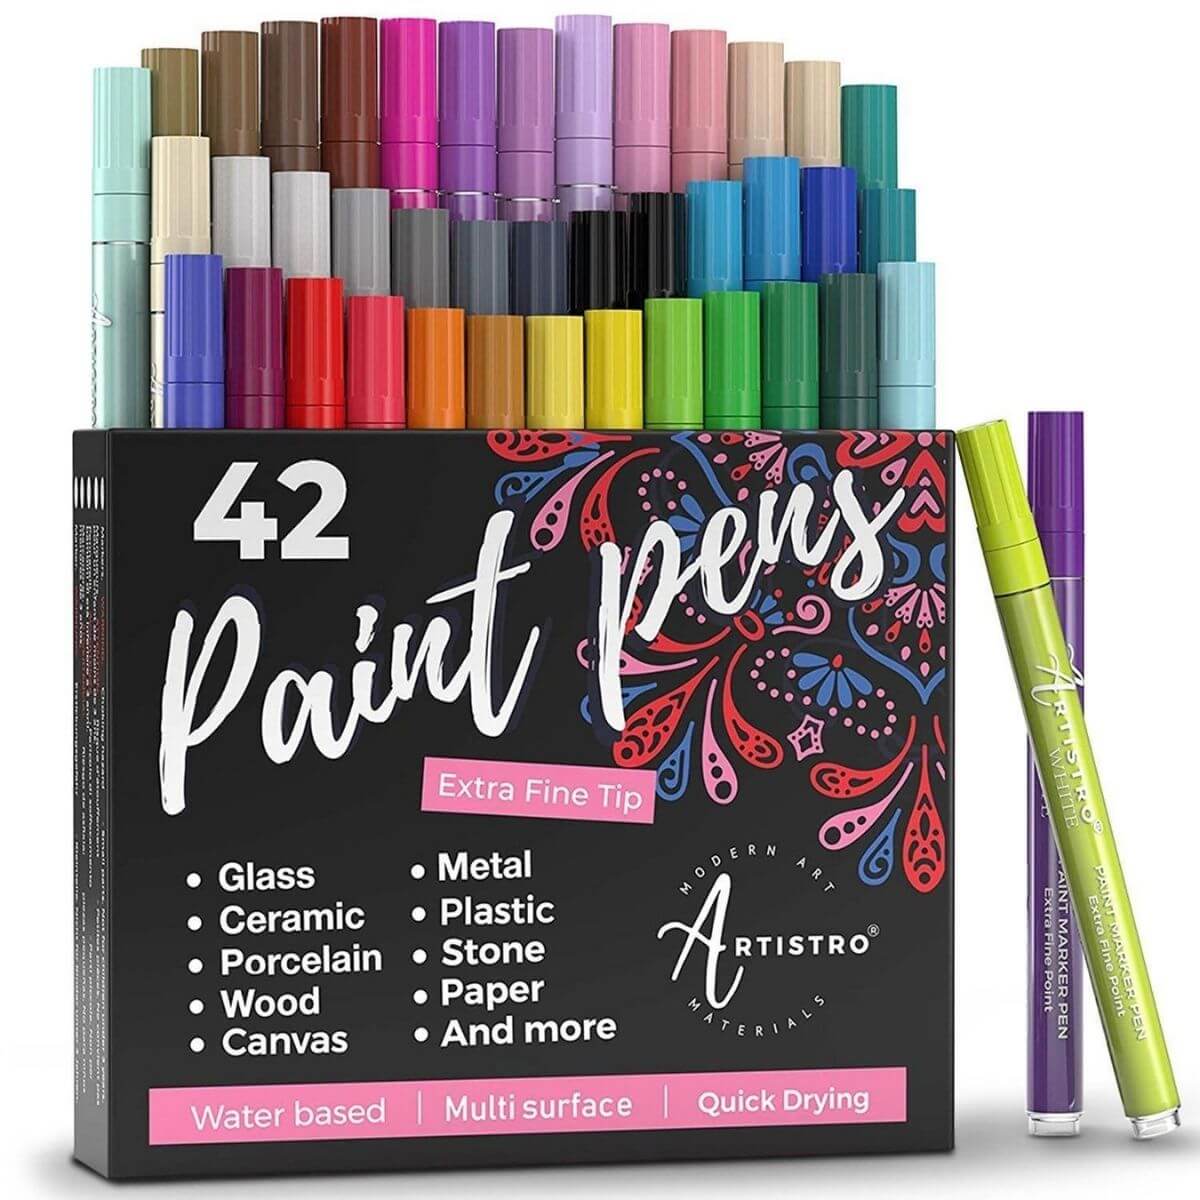 EXCEART 100 Pcs Marker Refill Acrylic Paint Markers Oil Paint Pen Tips  Paint Pen Supplies Acrylic Marker Fine Tip Paint Pens Portable Paint Points